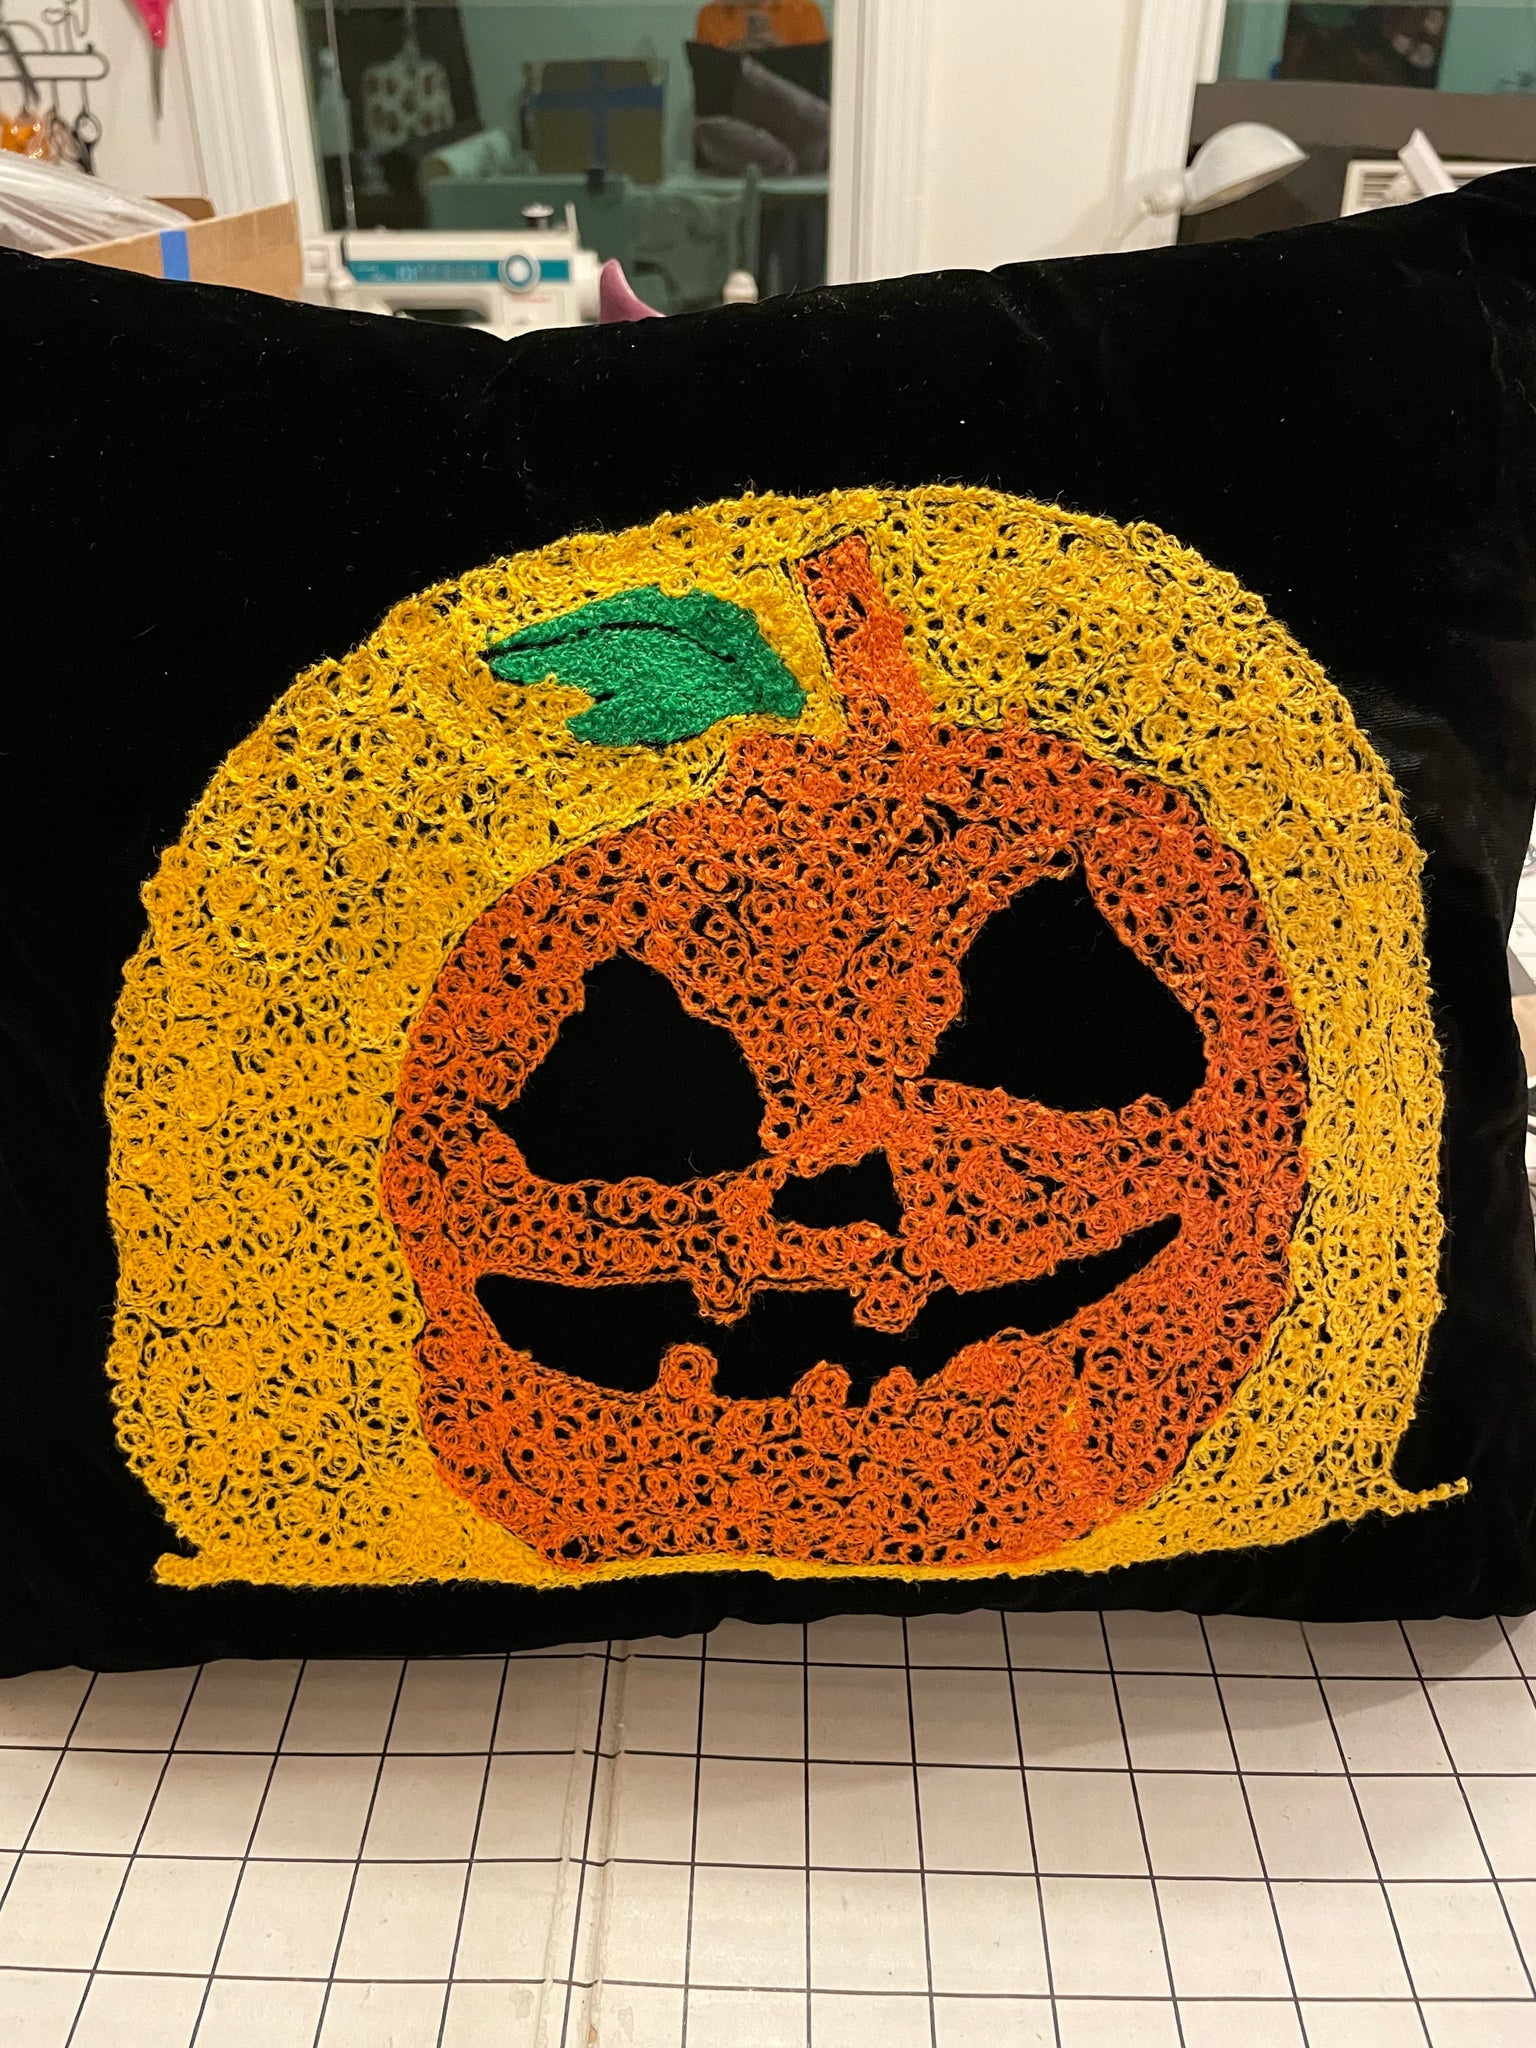 12 Halloween Pillow Ideas - Uncommon Designs